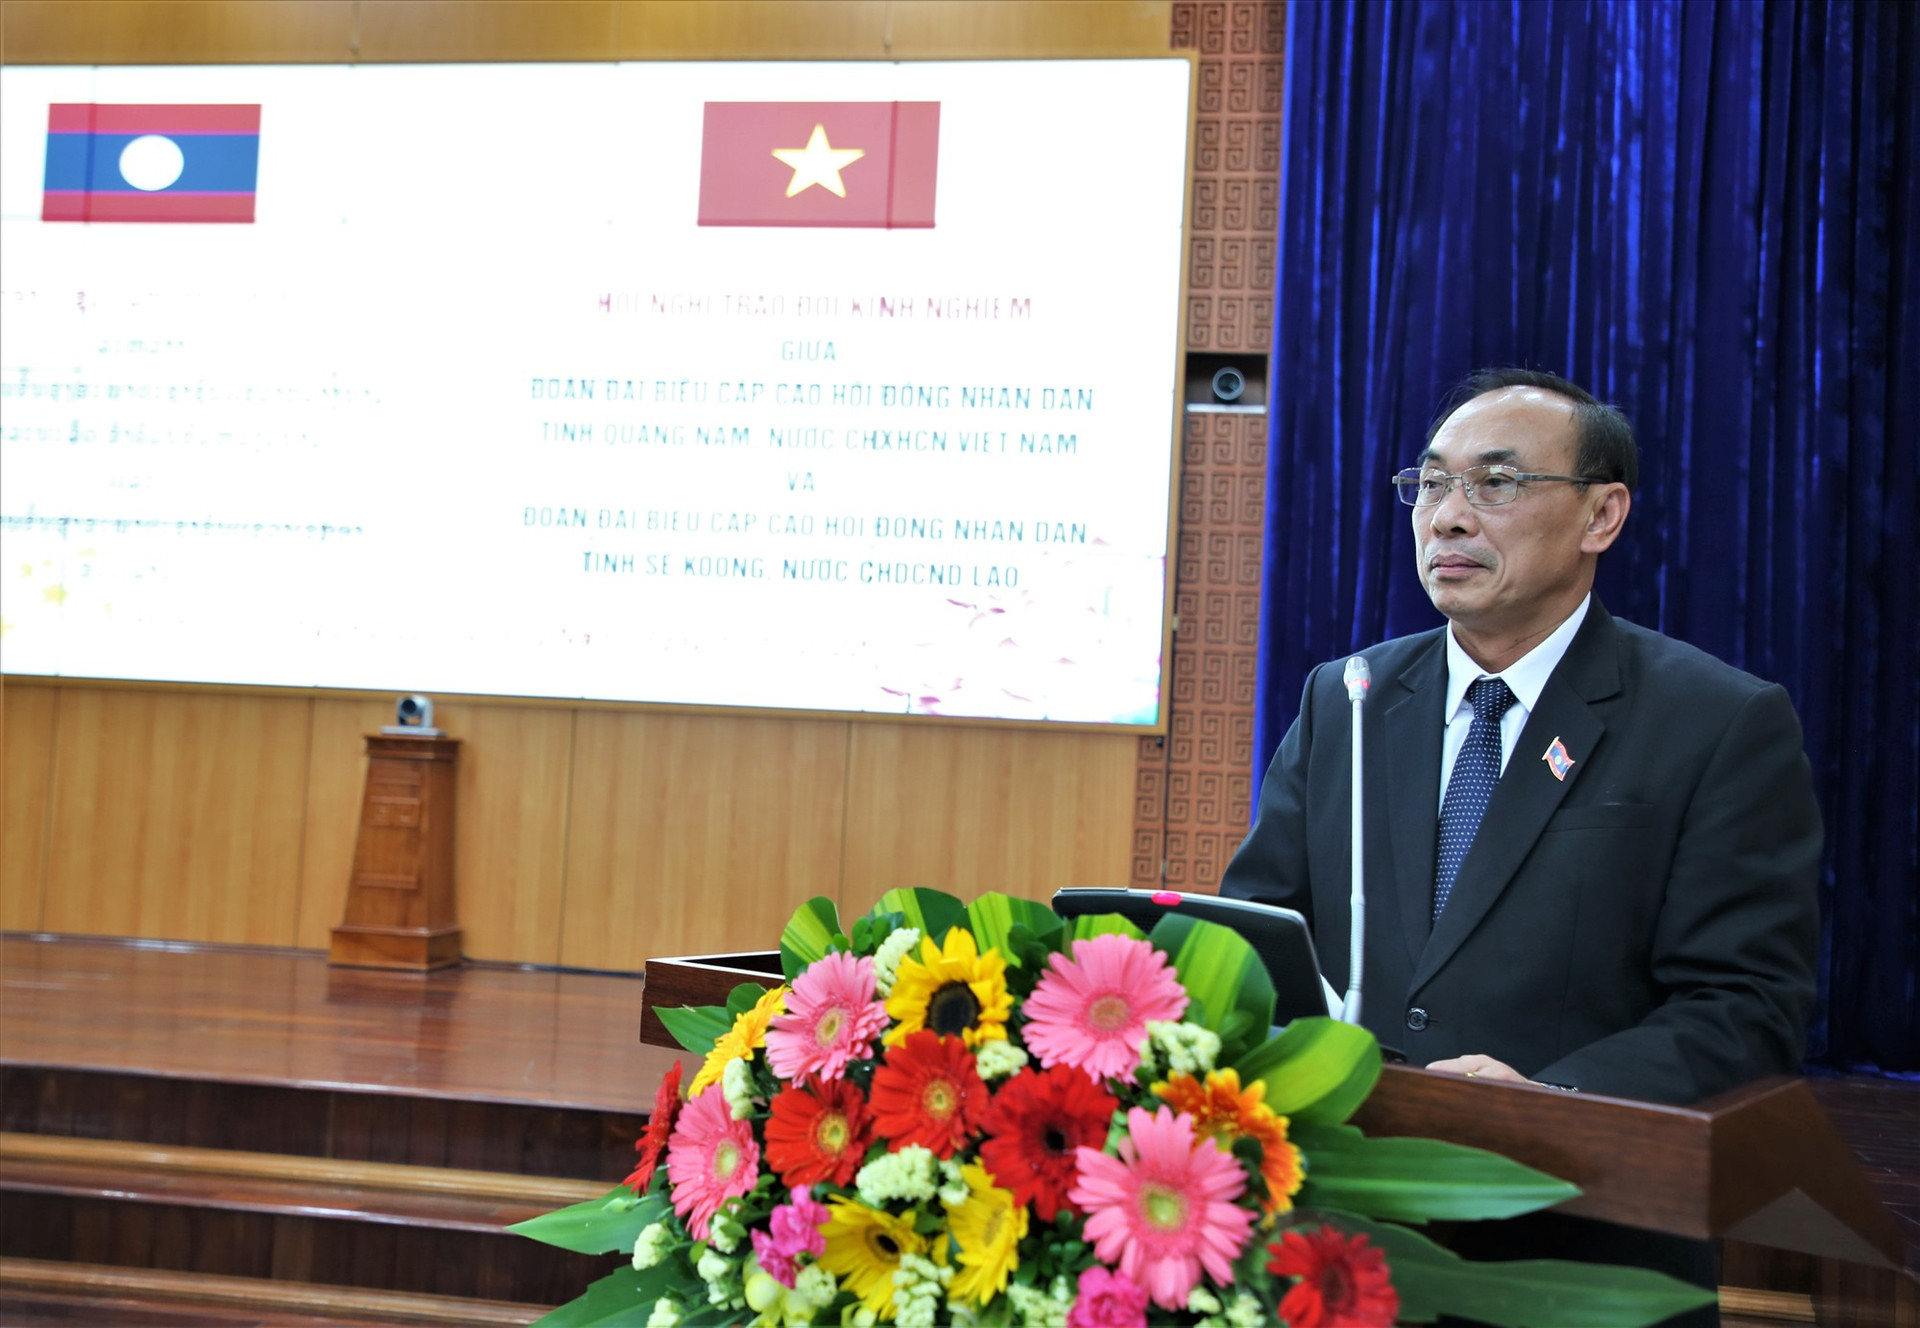 Phó Bí thư Tỉnh ủy, Chủ tịch HĐND tỉnh Sê Kông trao đổi các nội dung liên quan công tác quản lý, điều hành HĐND. Ảnh: A.N